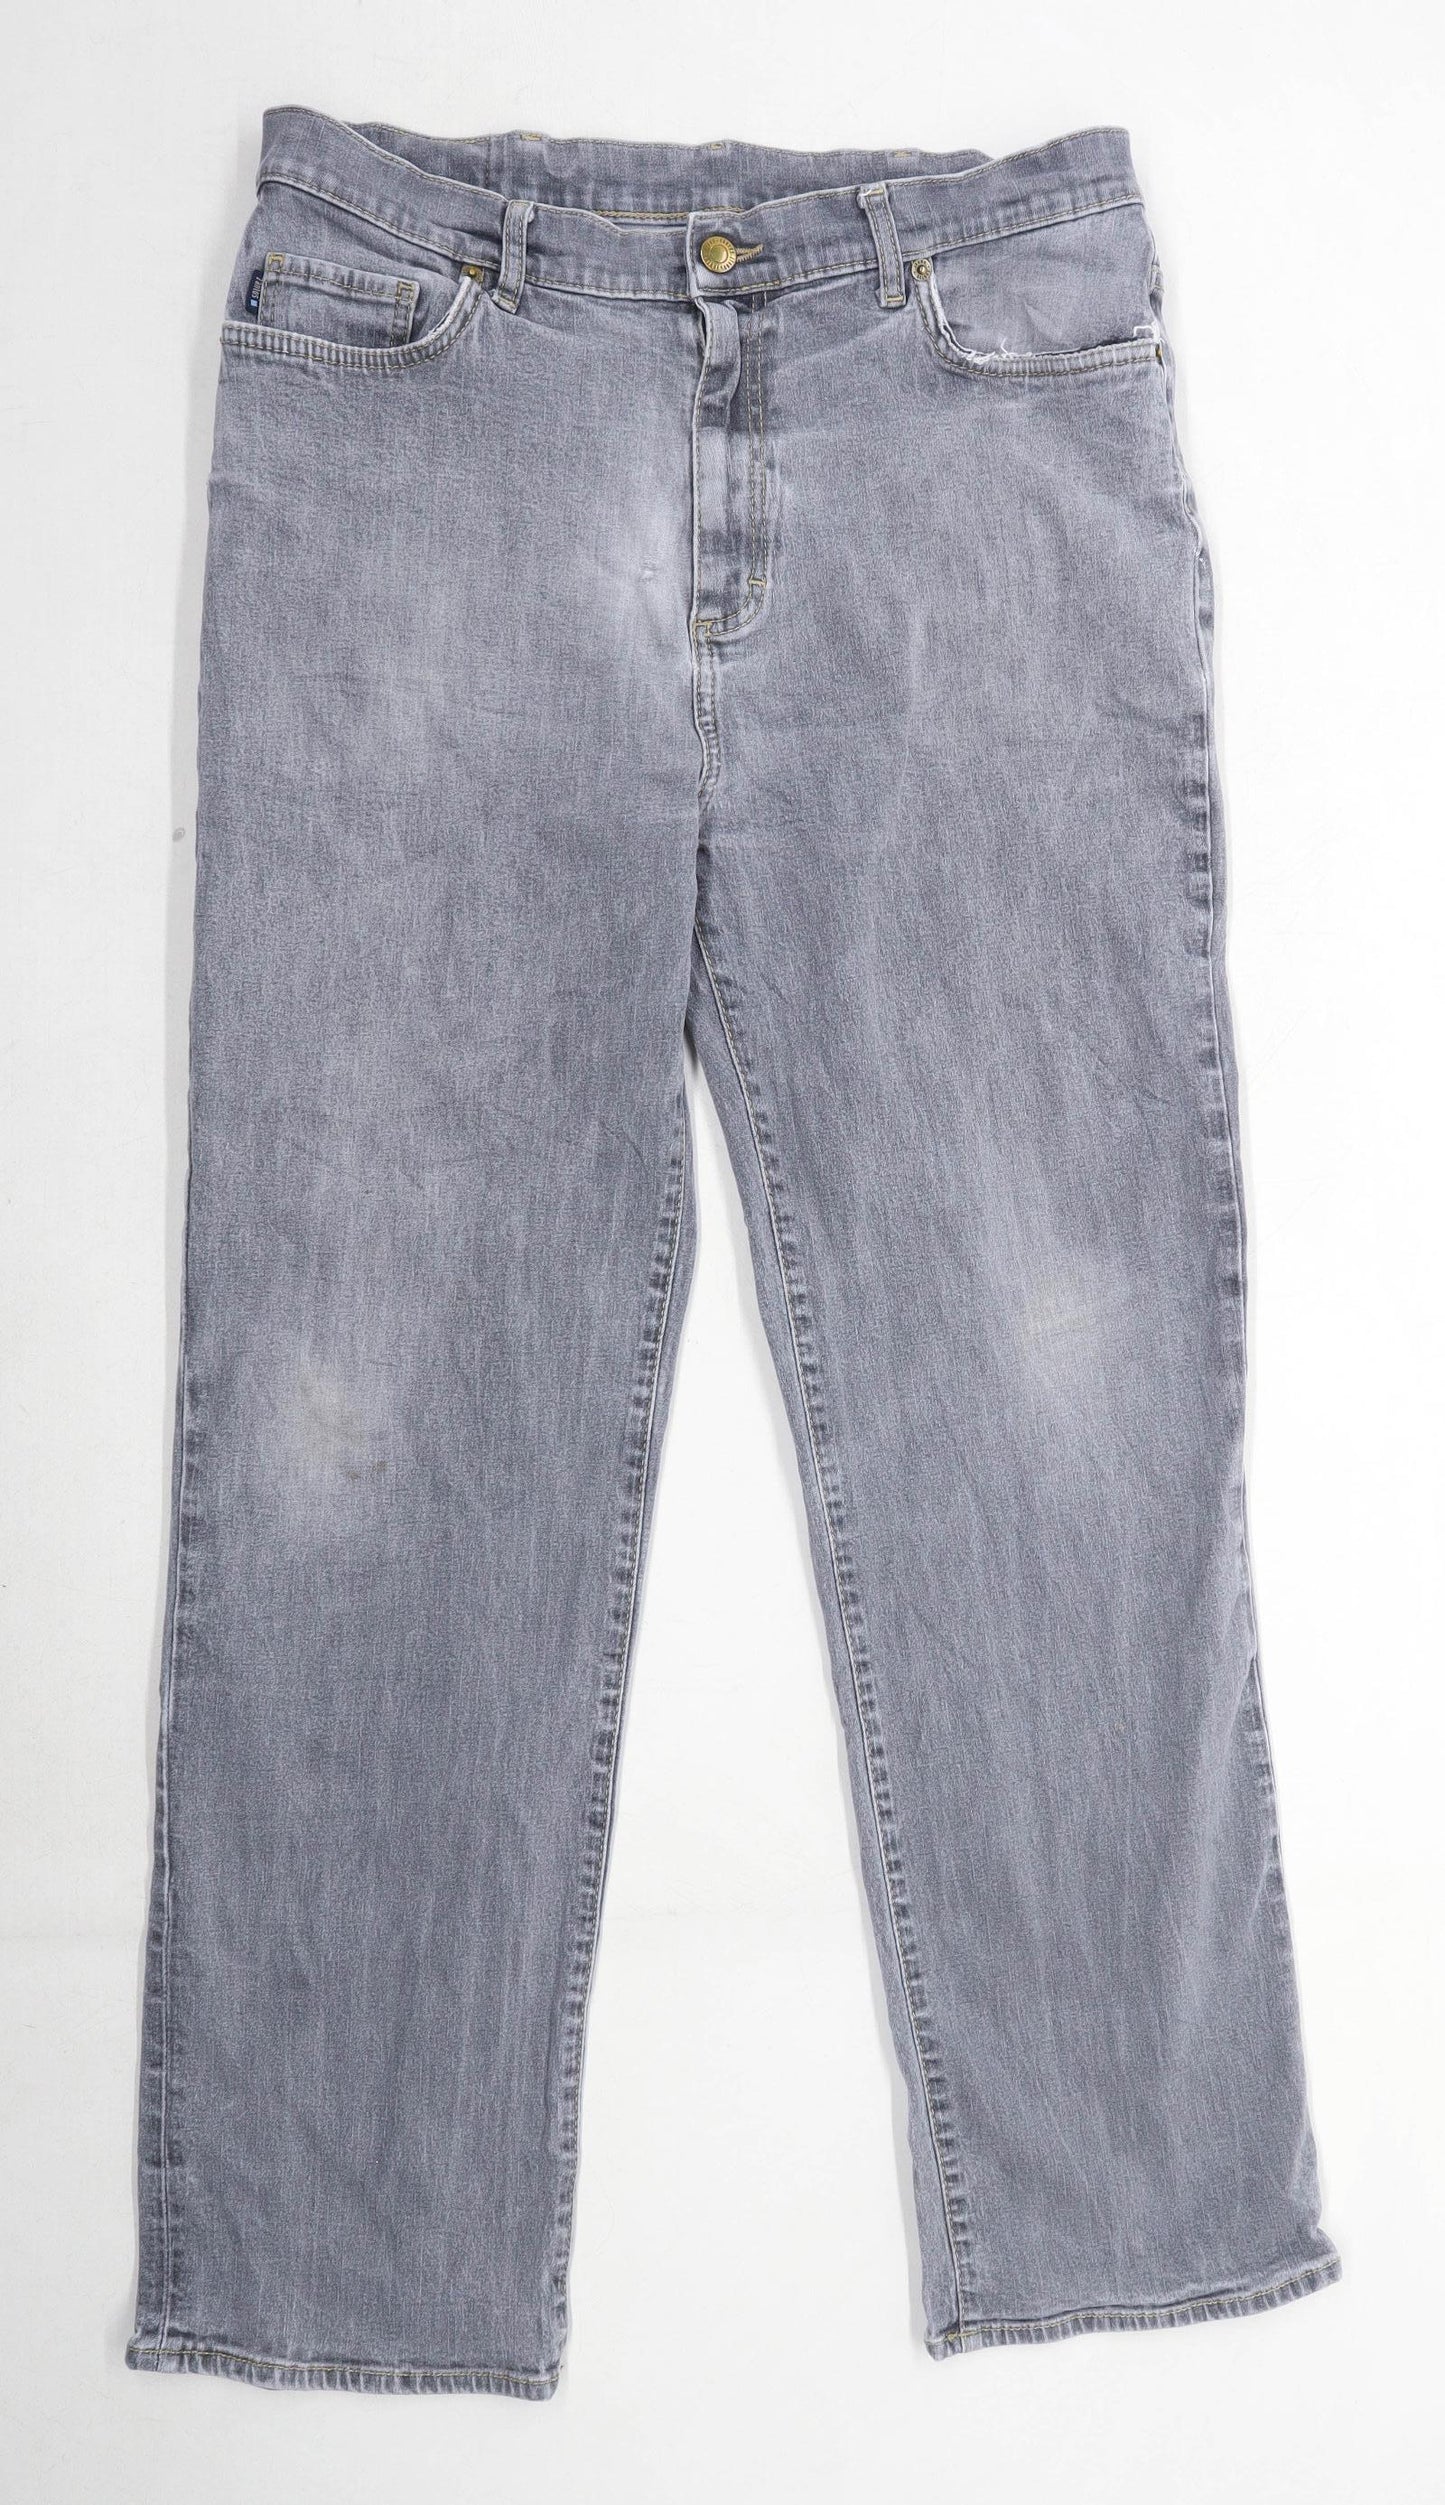 Zantos Mens Grey Denim Jeans Size W32/L29